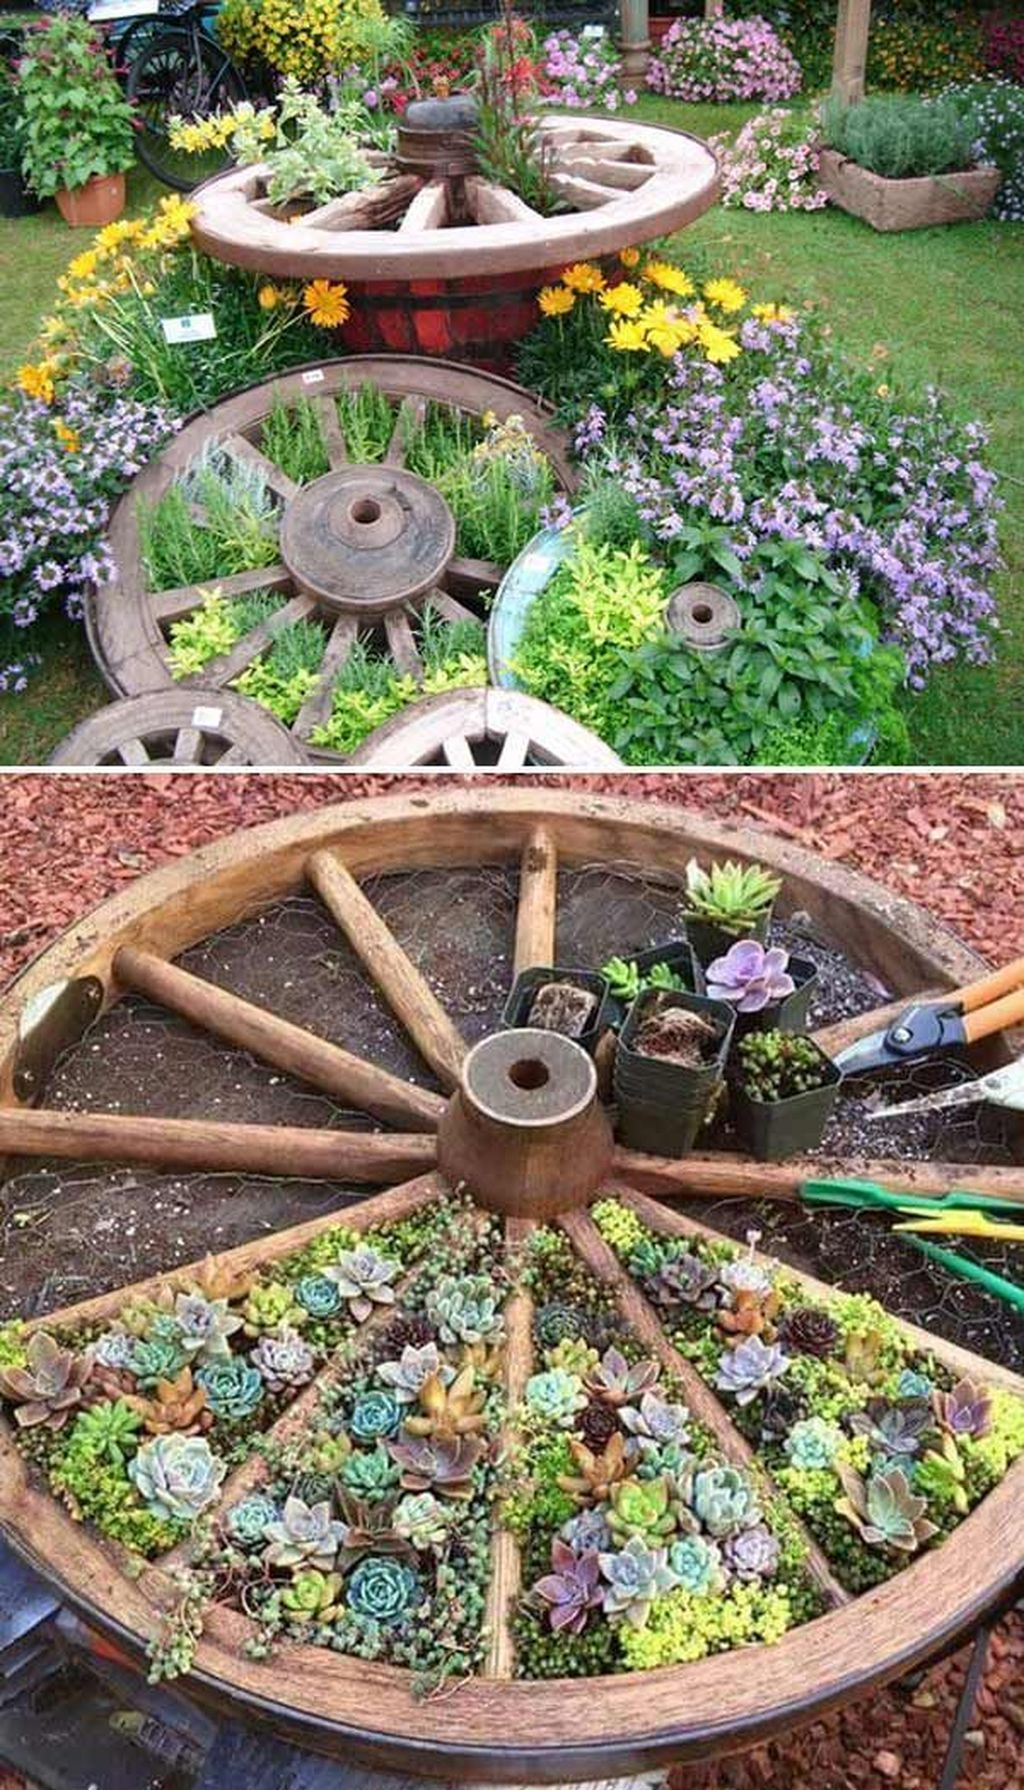  creative gardening ideas